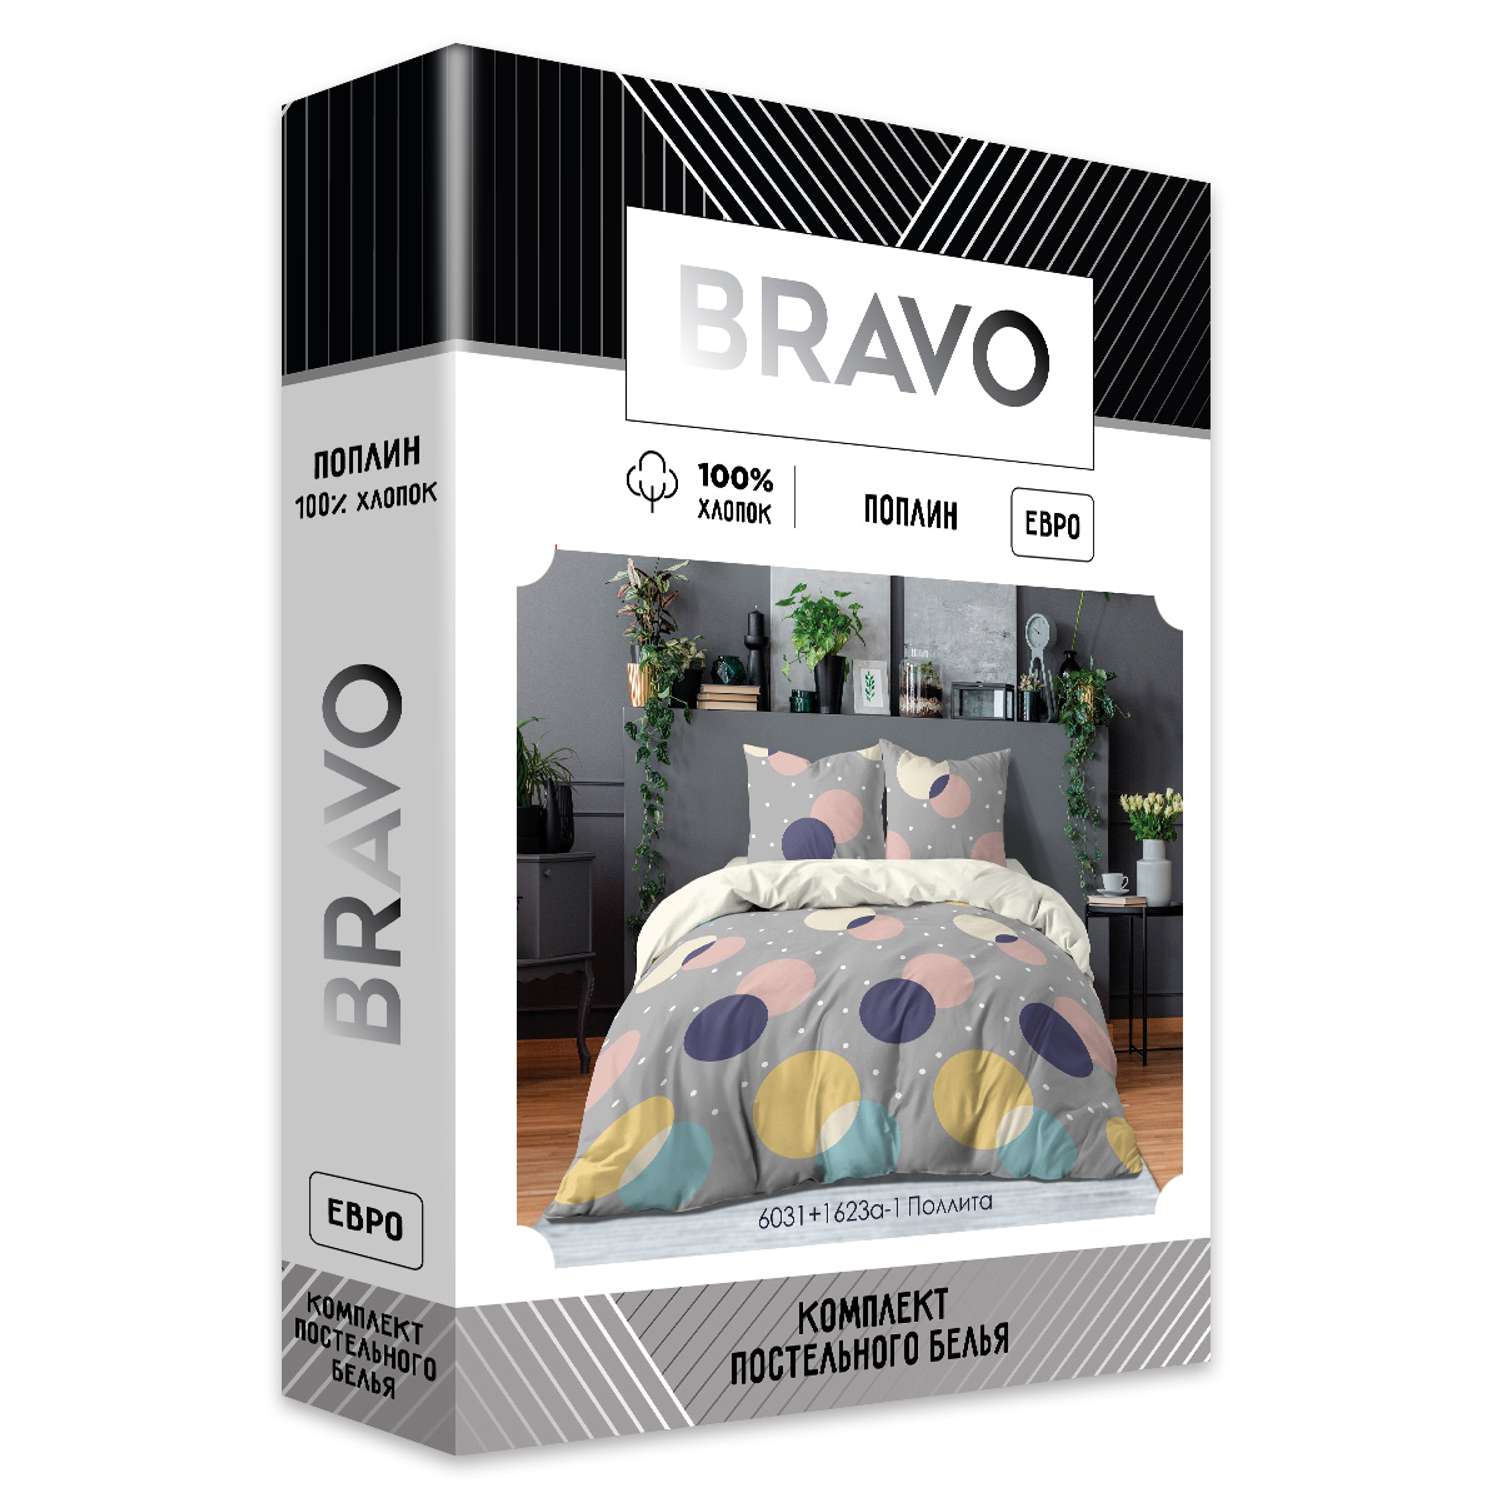 Комплект постельного белья BRAVO Поллита евро наволочки 70х70 рис.6031+1623а-1 - фото 10